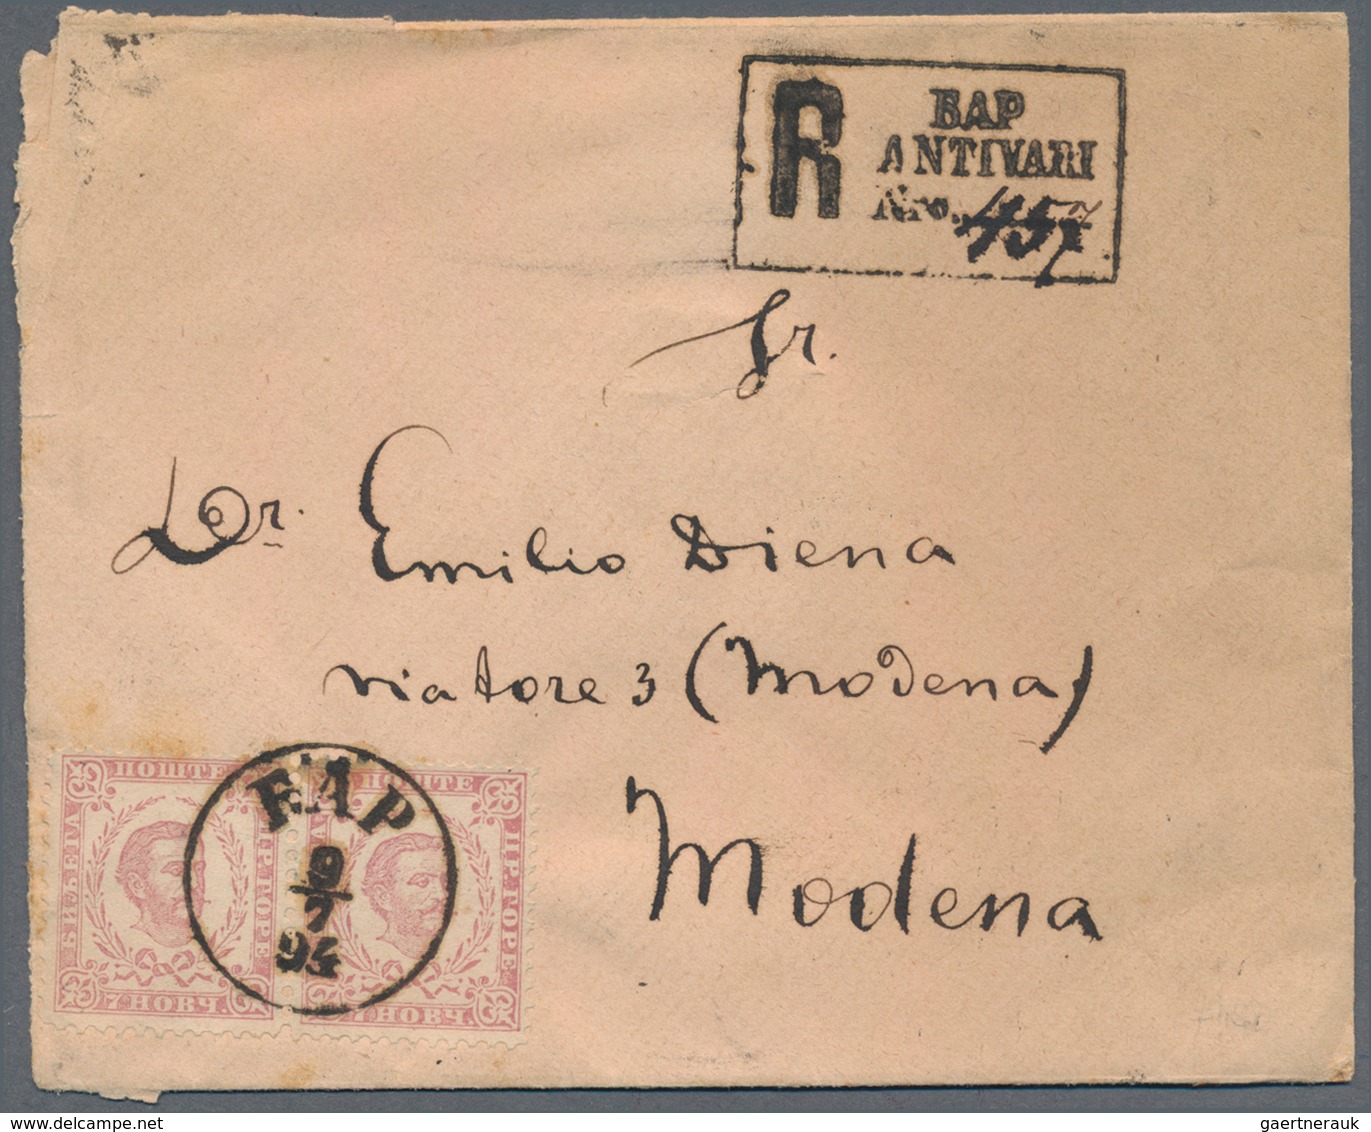 Montenegro: 1879/1945. spannende Partie mit fast nur besseren Stücken, Briefe, Ganzsachen, Postkarte